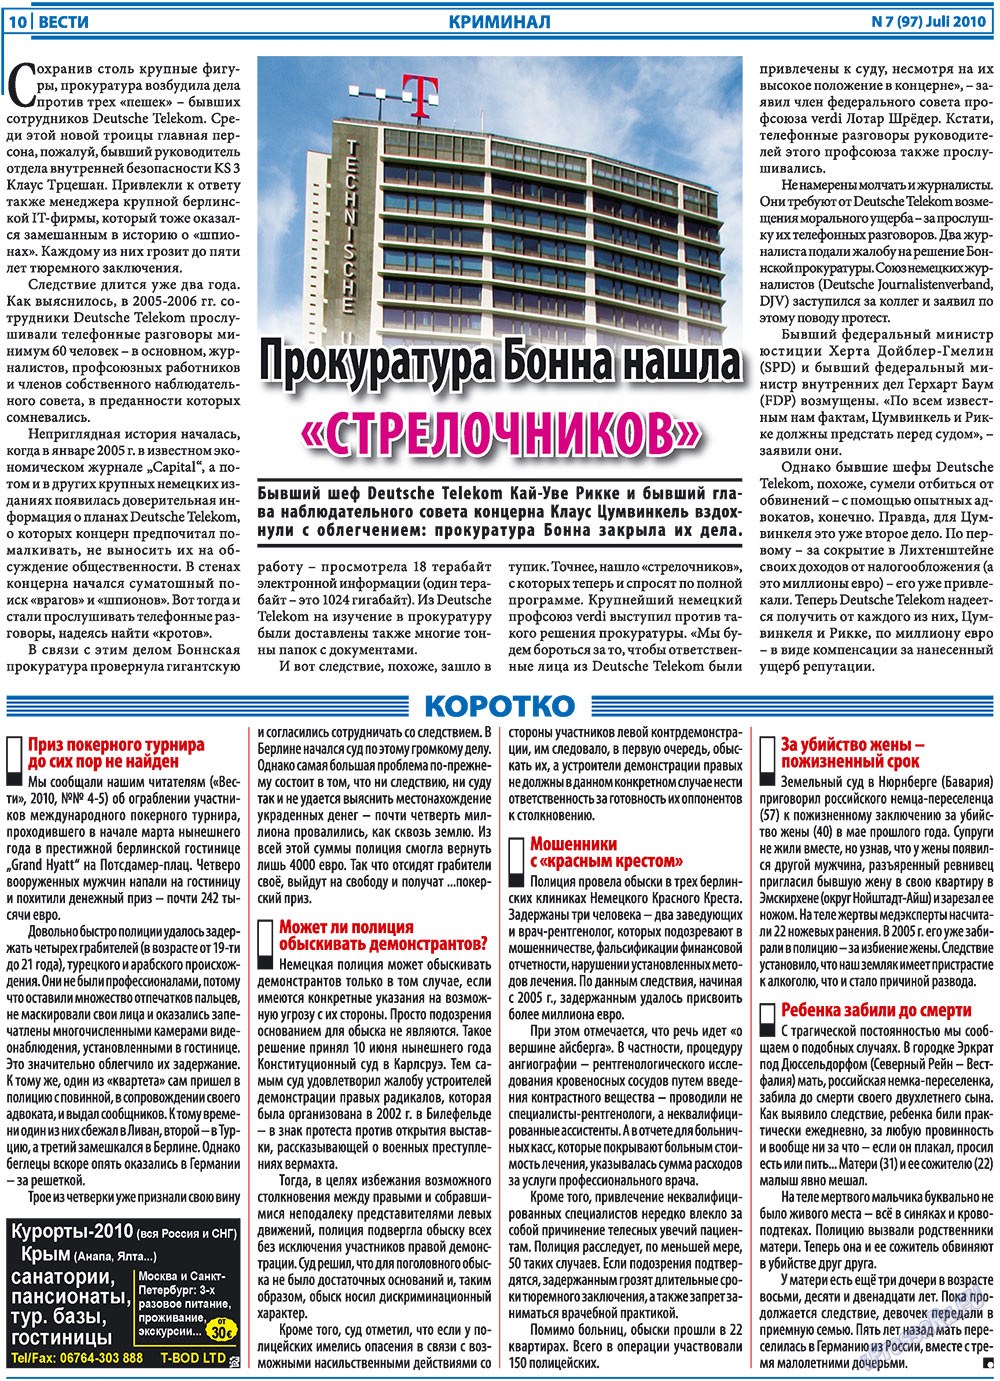 Вести, газета. 2010 №7 стр.10